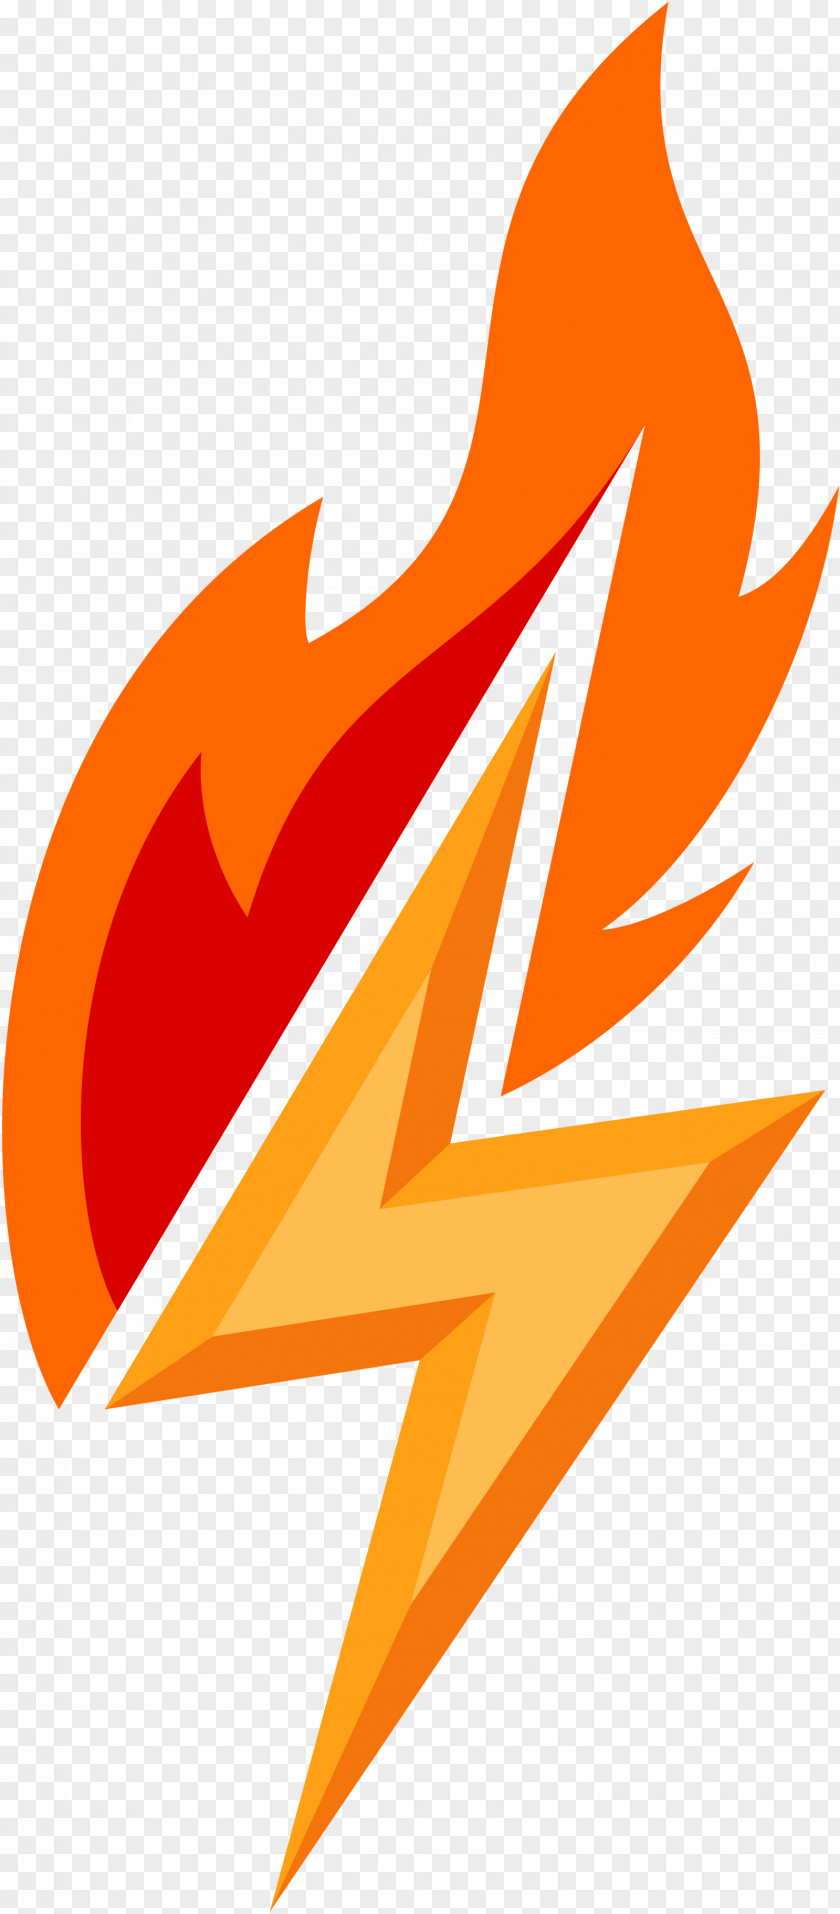 Lightning Bolt Flame Fire DeviantArt Cutie Mark Crusaders PNG